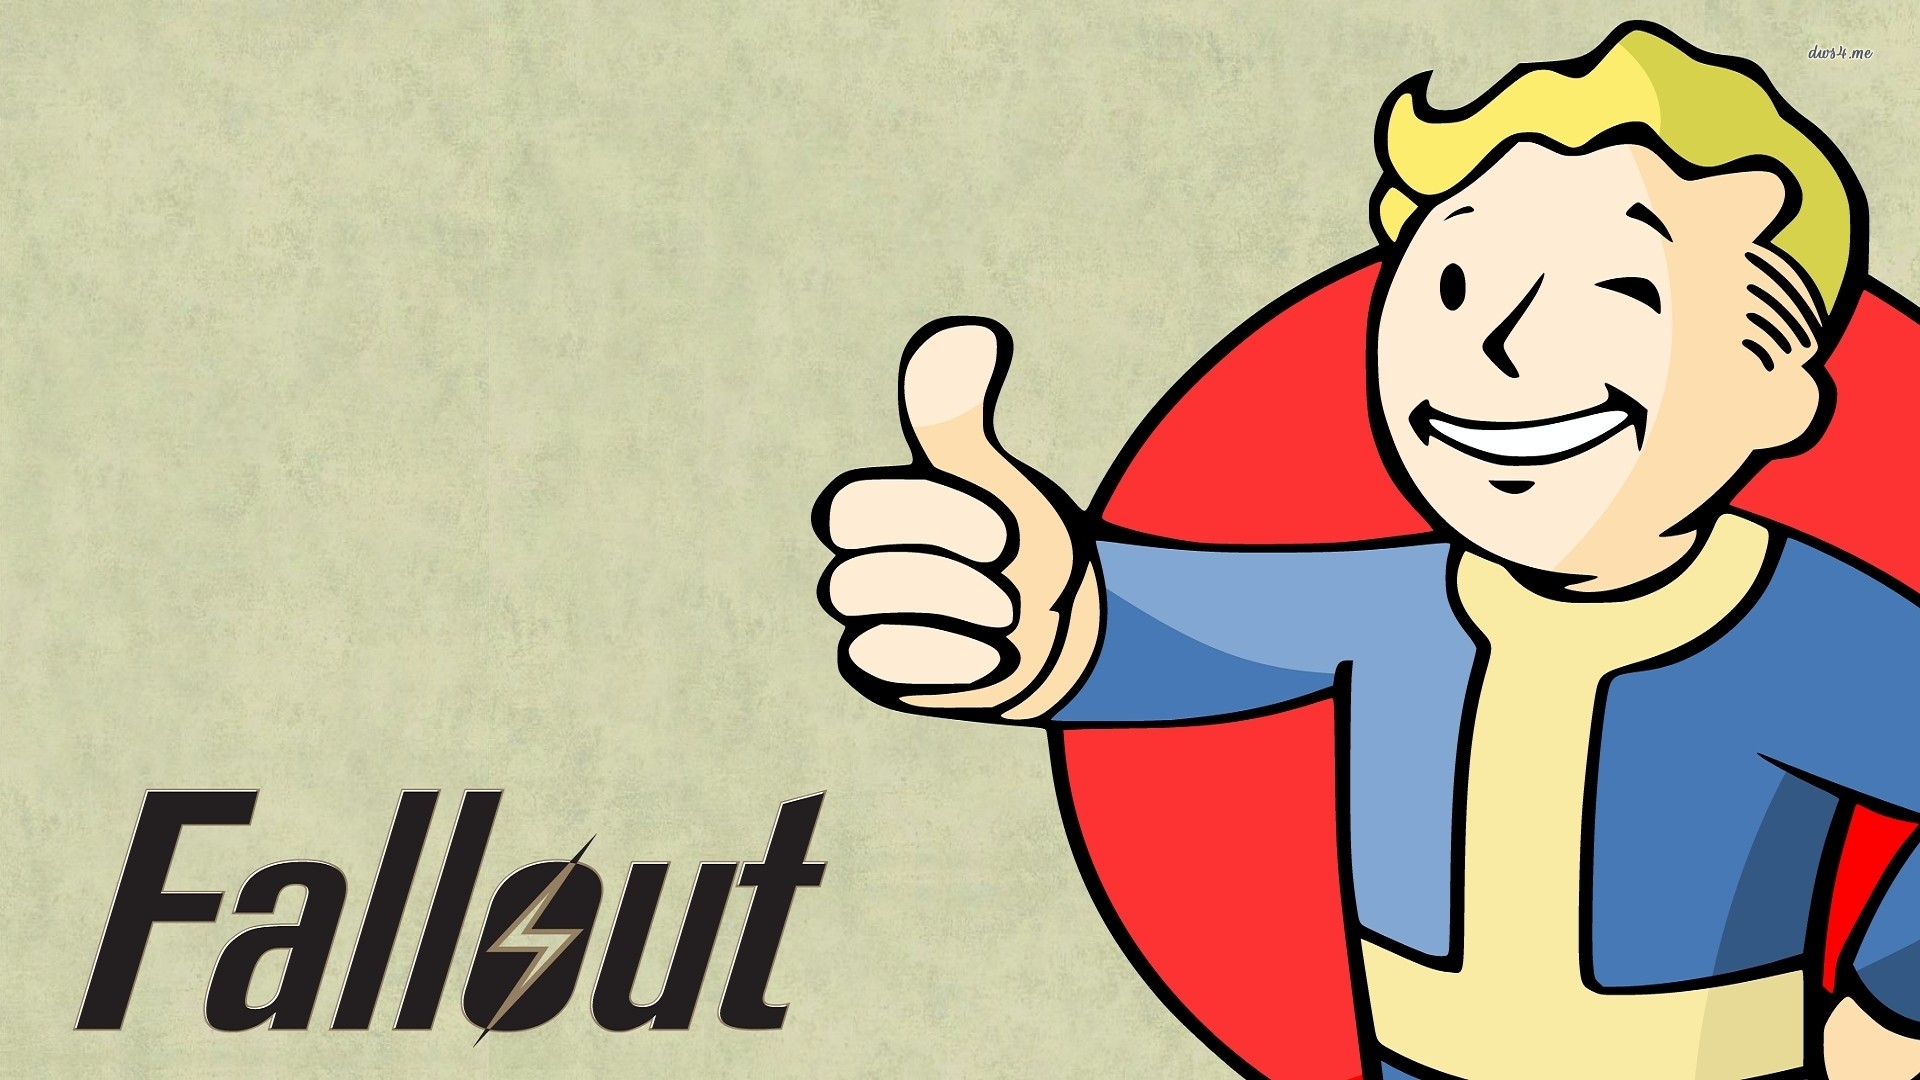 Vault Boy – Fallout wallpaper 1280×800 Vault Boy – Fallout wallpaper .